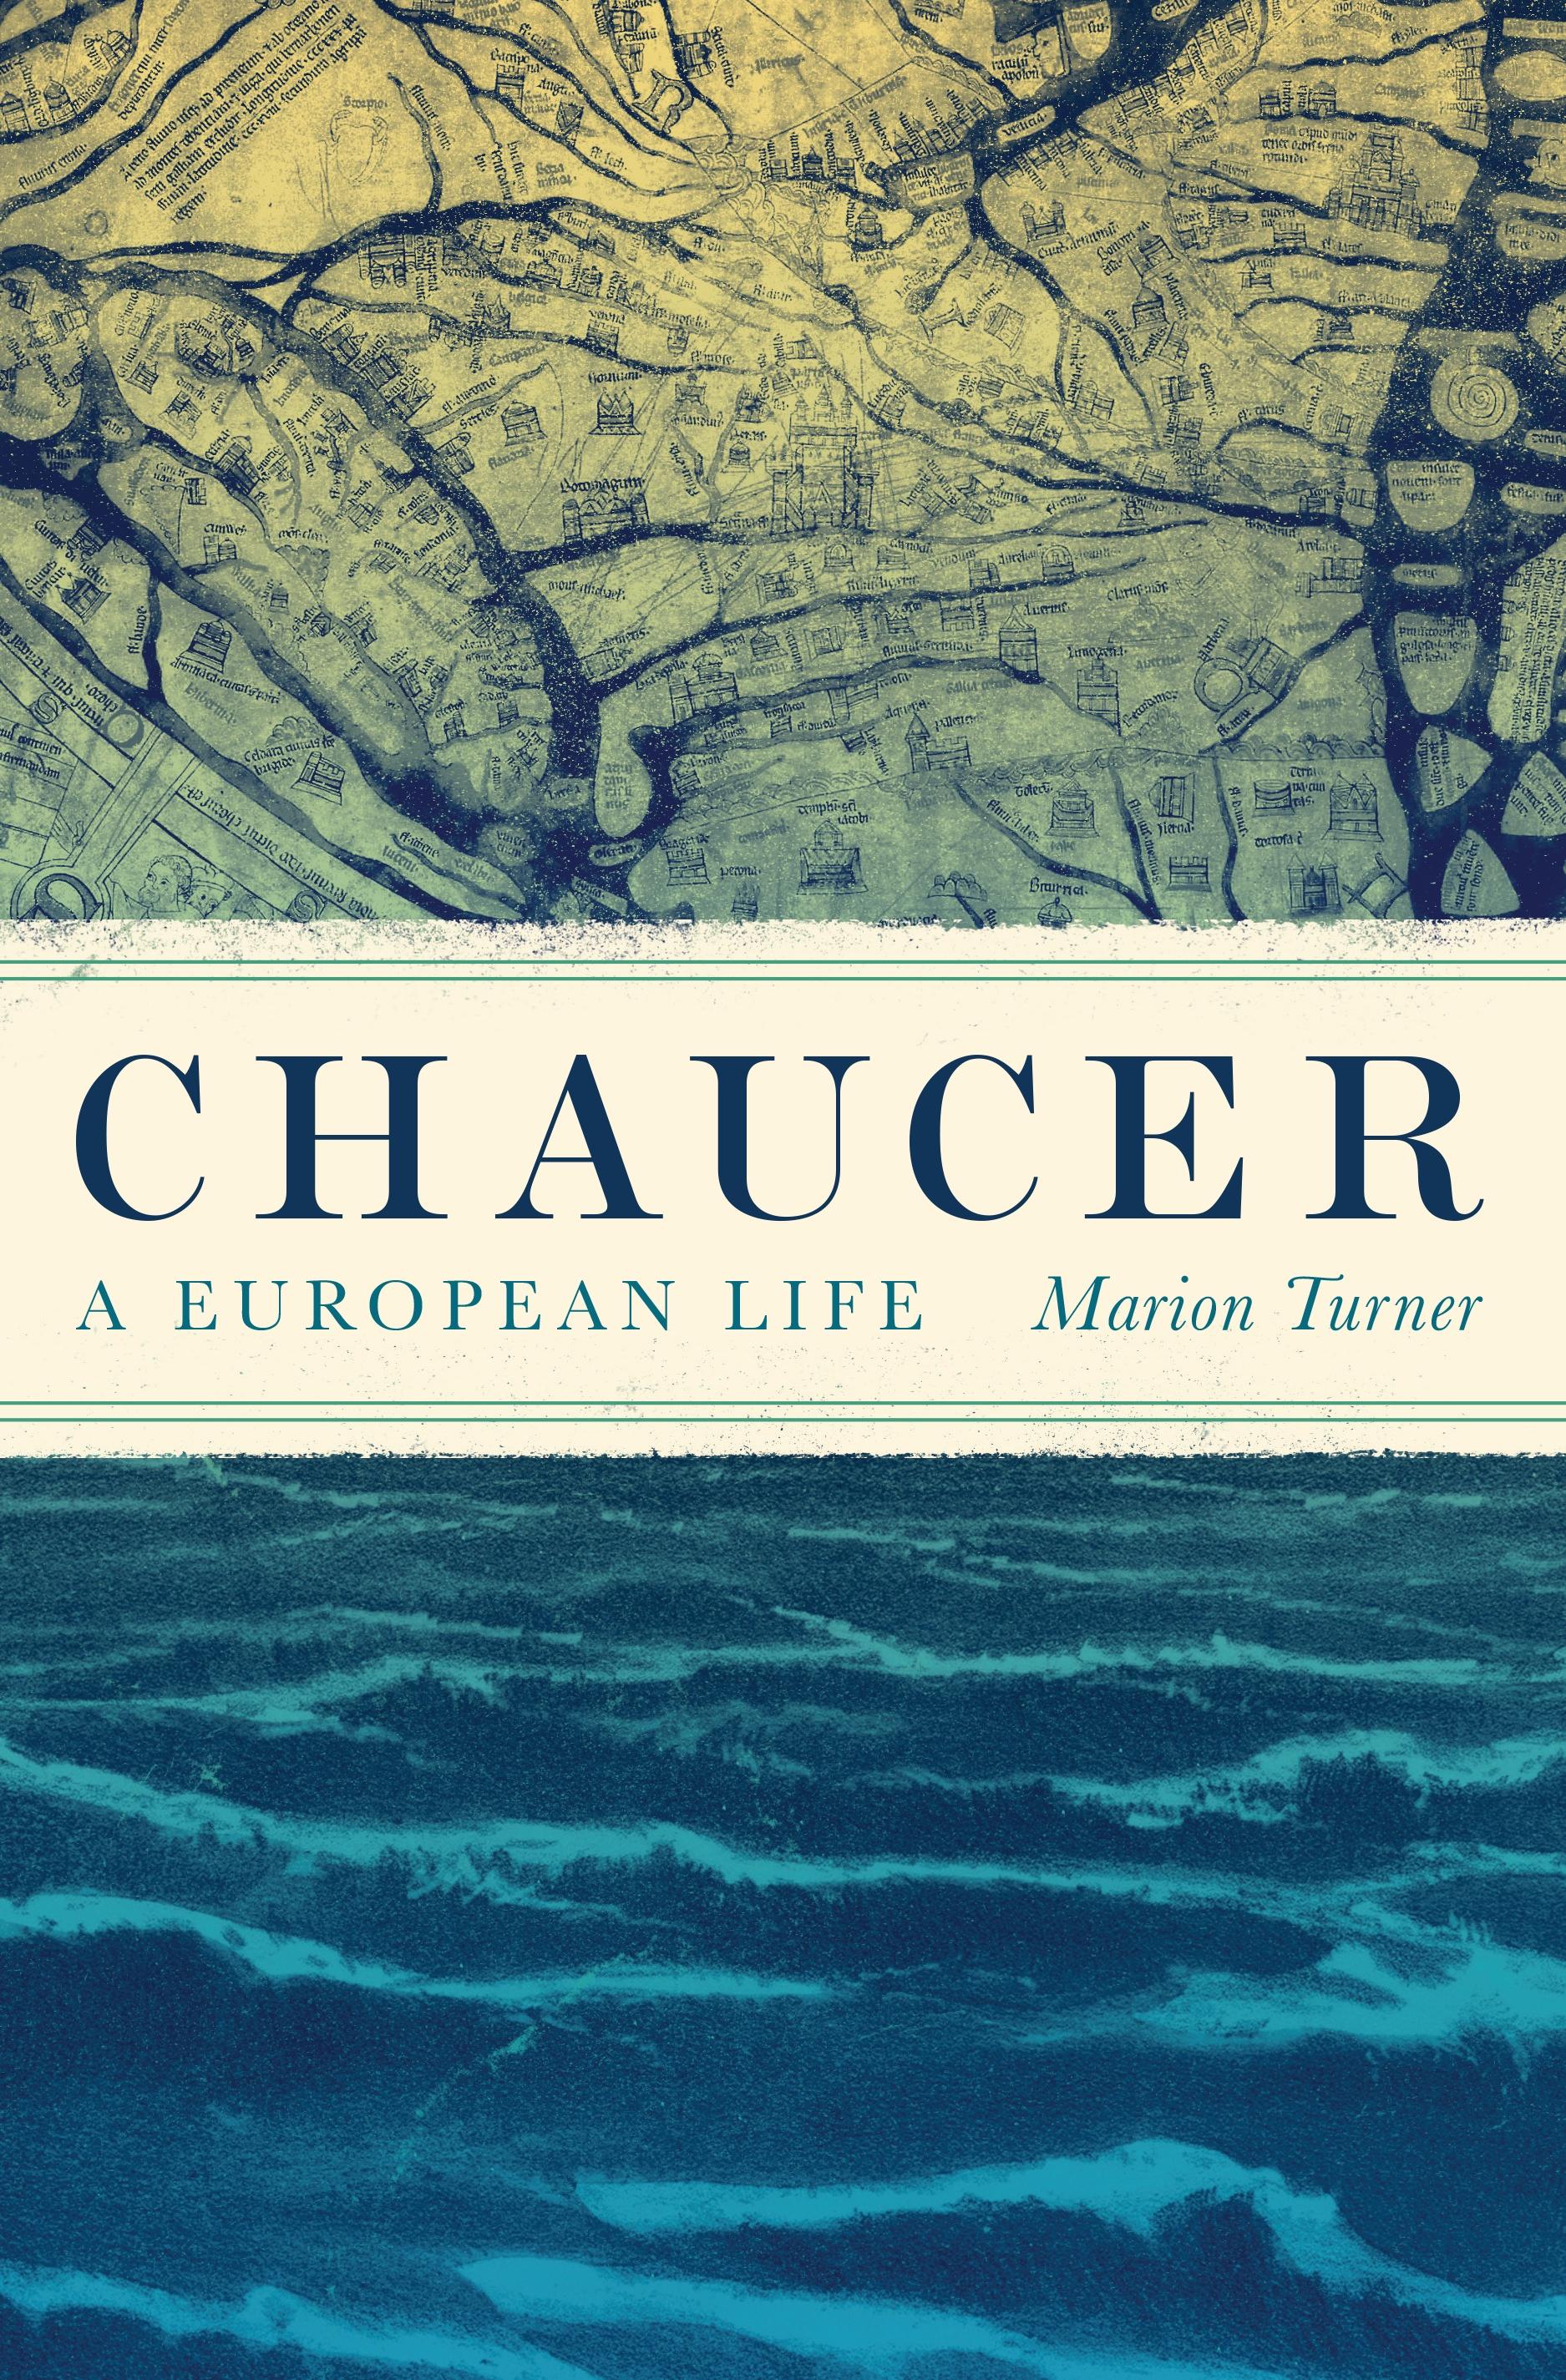 Chaucer / A European Life / Marion Turner / Buch / Gebunden / Englisch / 2019 / Princeton University Press / EAN 9780691160092 - Turner, Marion